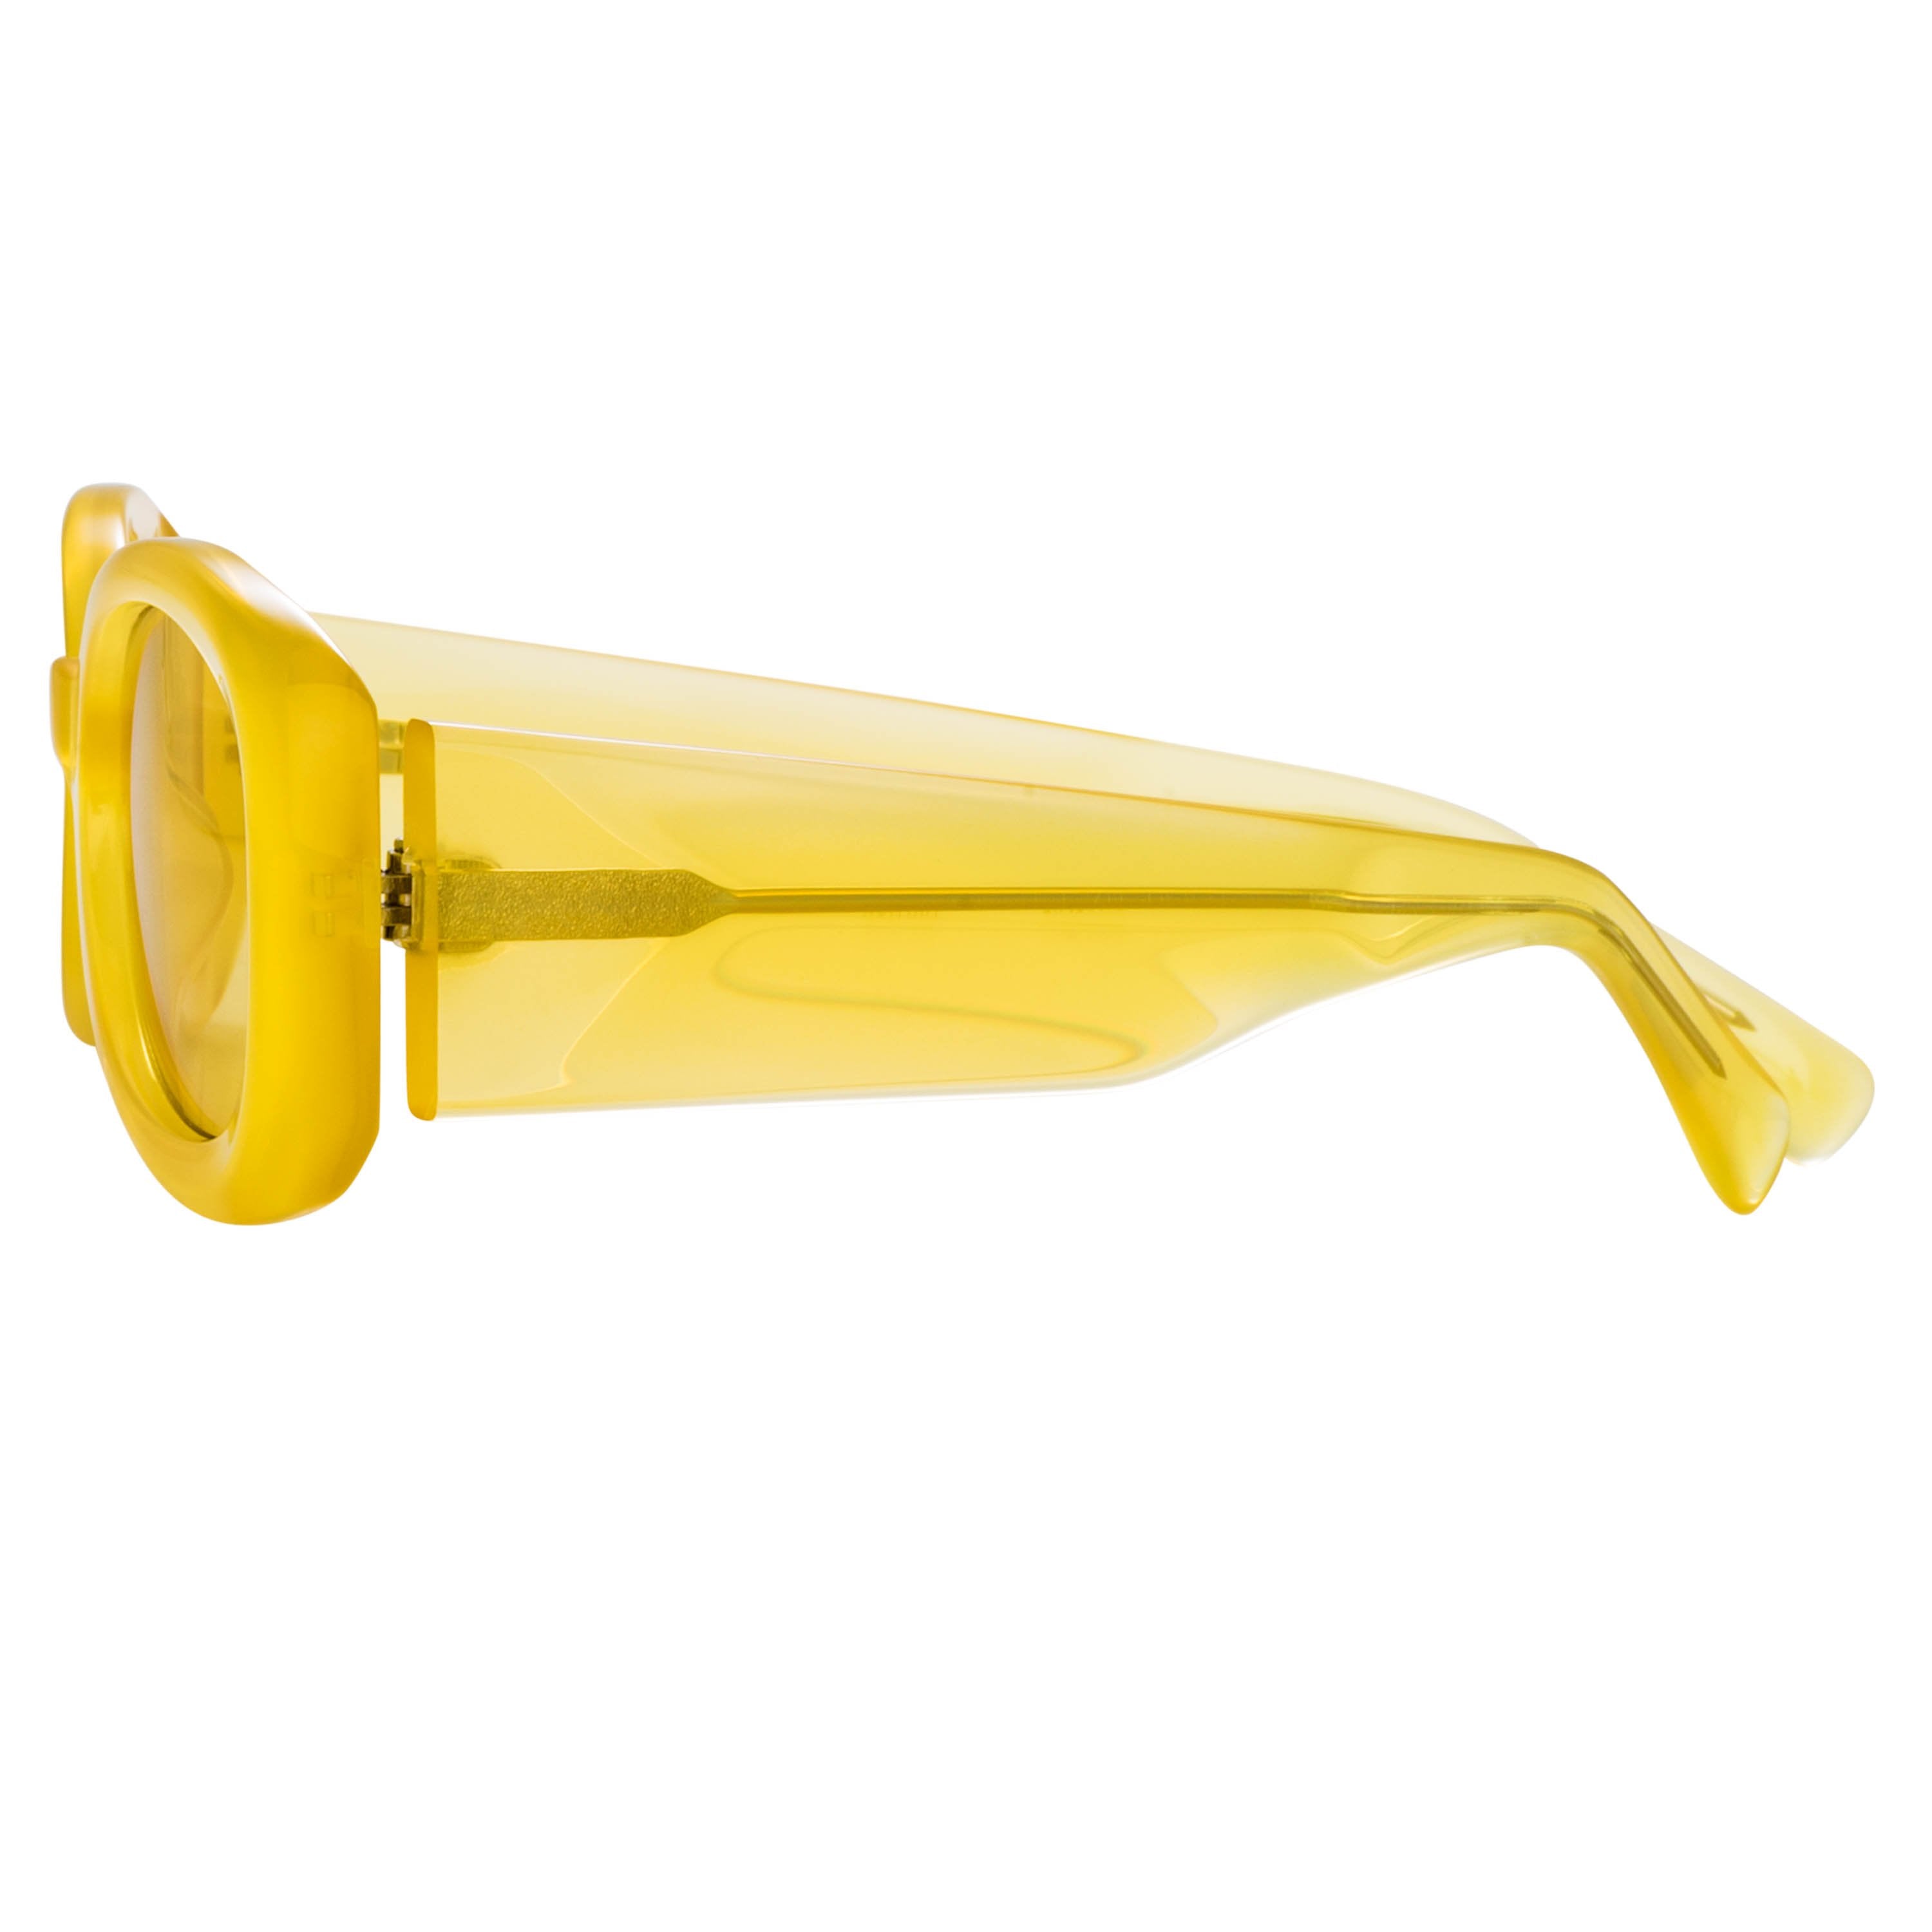 Color_DVN204C2SUN - Dries van Noten 204 Aviator Sunglasses in Yellow